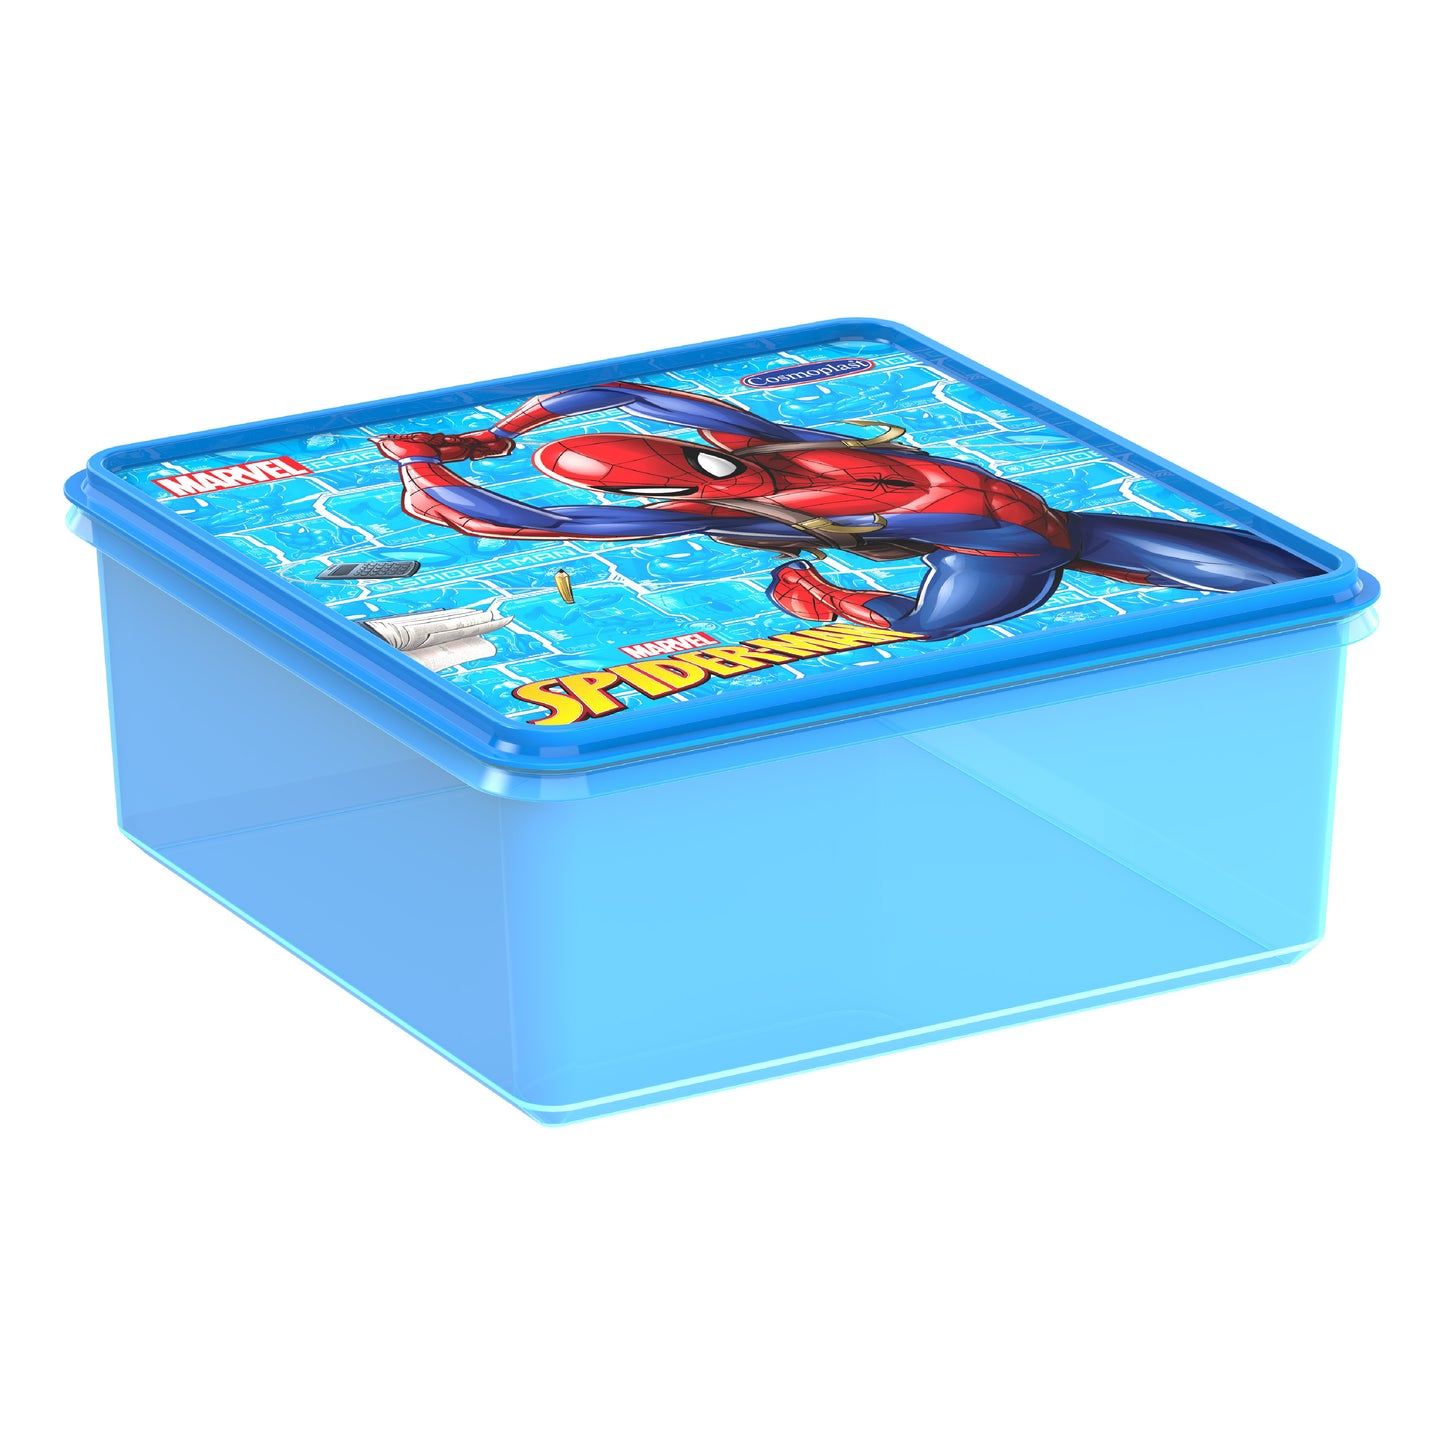 Cosmoplast Disney Marvel Spider Man Storage Box 10 Liters